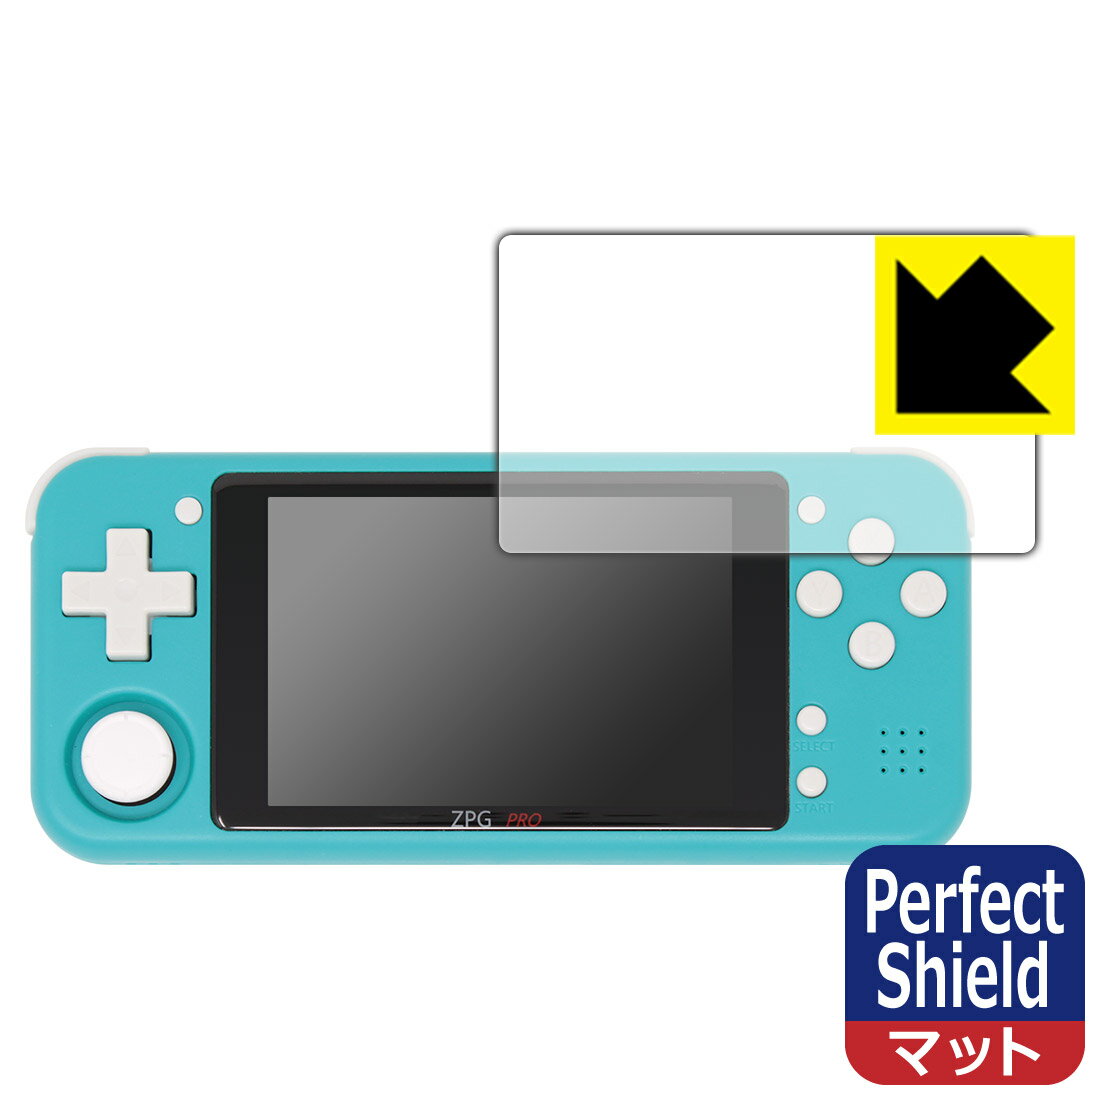 ●対応機種 : ZPG PRO (Z-POCKET GAME PRO)●内容量 : 1枚●※この機器は周辺部が曲面となったラウンド仕様のため、保護フィルムを端まで貼ることができません。(表示部分はカバーしています)　　※画面の端まで保護したい方は、「Flexible Shield」をご購入ください。●「Perfect Shield」は画面の反射を抑え、指のすべりもなめらかな指紋や皮脂汚れがつきにくい『アンチグレアタイプ(非光沢)の保護フィルム』●安心の国産素材を使用。日本国内の自社工場で製造し出荷しています。【ポスト投函送料無料】商品は【ポスト投函発送 (追跡可能メール便)】で発送します。お急ぎ、配達日時を指定されたい方は以下のクーポンを同時購入ください。【お急ぎ便クーポン】　プラス110円(税込)で速達扱いでの発送。お届けはポストへの投函となります。【配達日時指定クーポン】　プラス550円(税込)で配達日時を指定し、宅配便で発送させていただきます。【お急ぎ便クーポン】はこちらをクリック【配達日時指定クーポン】はこちらをクリック 　 表面に微細な凹凸を作ることにより、外光を乱反射させギラツキを抑える「アンチグレア加工」がされております。 屋外での太陽光の映り込み、屋内でも蛍光灯などの映り込みが気になるシーンが多い方におすすめです。 また、指紋がついた場合でも目立ちにくいという特長があります。 指滑りはさらさらな使用感でストレスのない操作・入力が可能です。 ハードコート加工がされており、キズや擦れに強くなっています。簡単にキズがつかず長くご利用いただけます。 反射防止のアンチグレア加工で指紋が目立ちにくい上、表面は防汚コーティングがされており、皮脂や汚れがつきにくく、また、落ちやすくなっています。 接着面は気泡の入りにくい特殊な自己吸着タイプです。素材に柔軟性があり、貼り付け作業も簡単にできます。また、はがすときにガラス製フィルムのように割れてしまうことはありません。 貼り直しが何度でもできるので、正しい位置へ貼り付けられるまでやり直すことができます。 最高級グレードの国産素材を日本国内の弊社工場で加工している完全な Made in Japan です。安心の品質をお届けします。 使用上の注意 ●本製品は機器の画面をキズなどから保護するフィルムです。他の目的にはご使用にならないでください。 ●本製品は液晶保護および機器本体を完全に保護することを保証するものではありません。機器の破損、損傷、故障、その他損害につきましては一切の責任を負いかねます。 ●製品の性質上、画面操作の反応が変化したり、表示等が変化して見える場合がございます。 ●貼り付け作業時の失敗(位置ズレ、汚れ、ゆがみ、折れ、気泡など)および取り外し作業時の破損、損傷などについては、一切の責任を負いかねます。 ●水に濡れた状態でのご使用は吸着力の低下などにより、保護フィルムがはがれてしまう場合がございます。防水対応の機器でご使用の場合はご注意ください。 ●アルコール類やその他薬剤を本製品に付着させないでください。表面のコーティングや吸着面が変質するおそれがあります。 ●品質向上のため、仕様などを予告なく変更する場合がございますので、予めご了承ください。